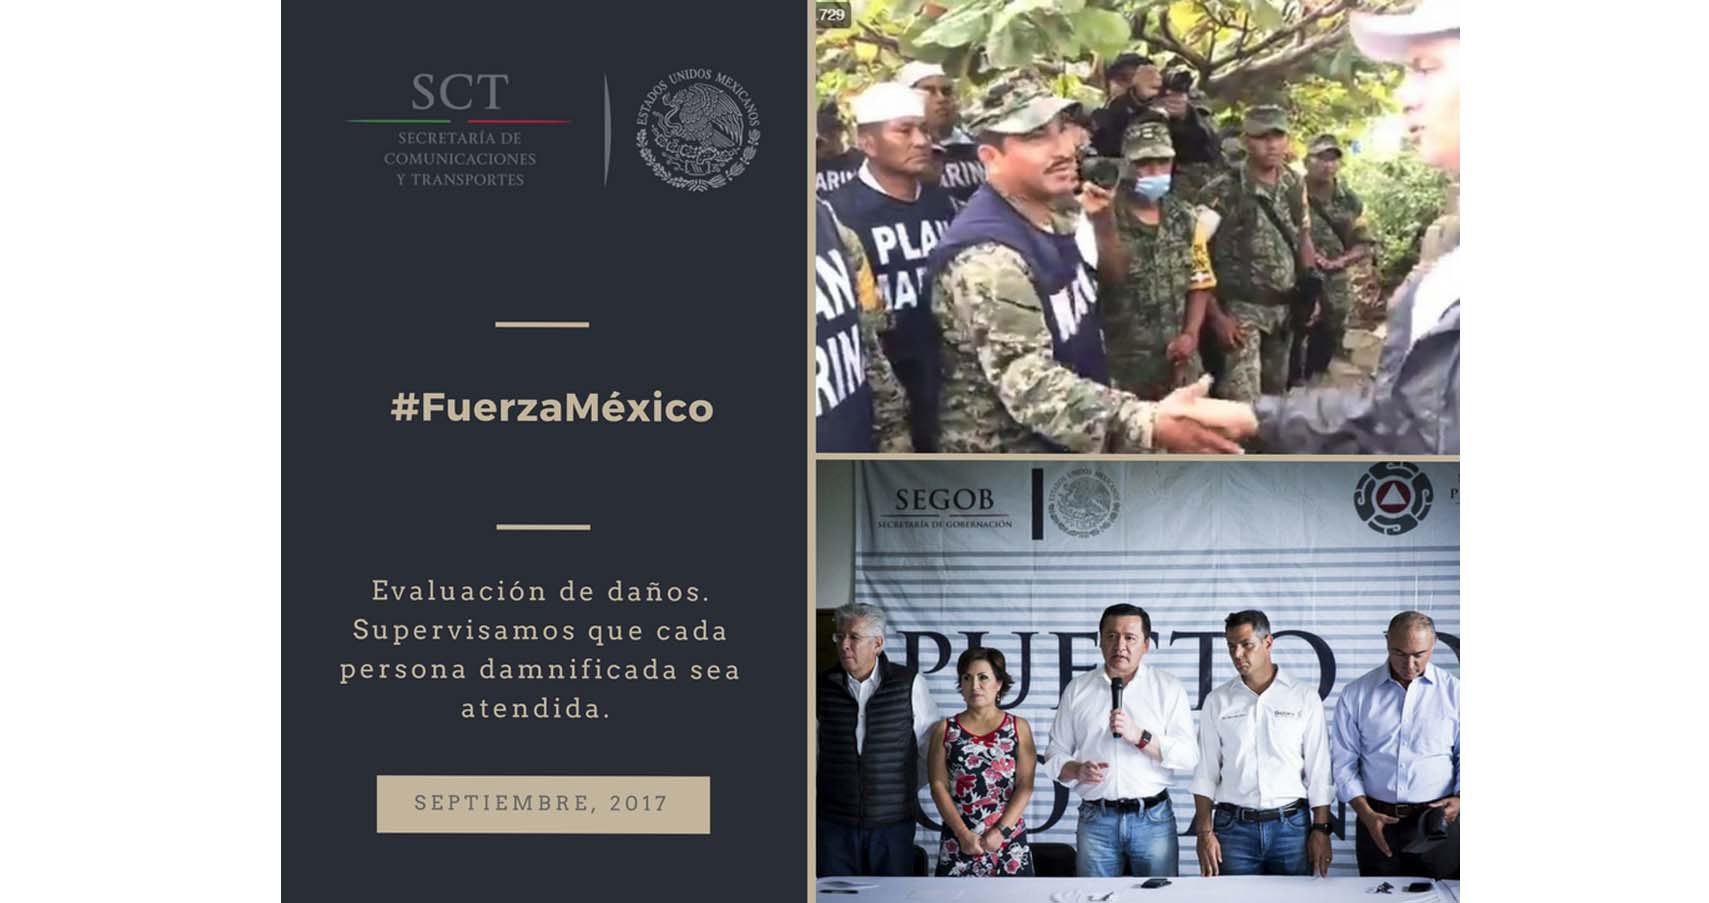 Desde la #SCT trabajamos de la mano con @GobOax y la sociedad para superar las afectaciones por el sismo. #FuerzaMéxico